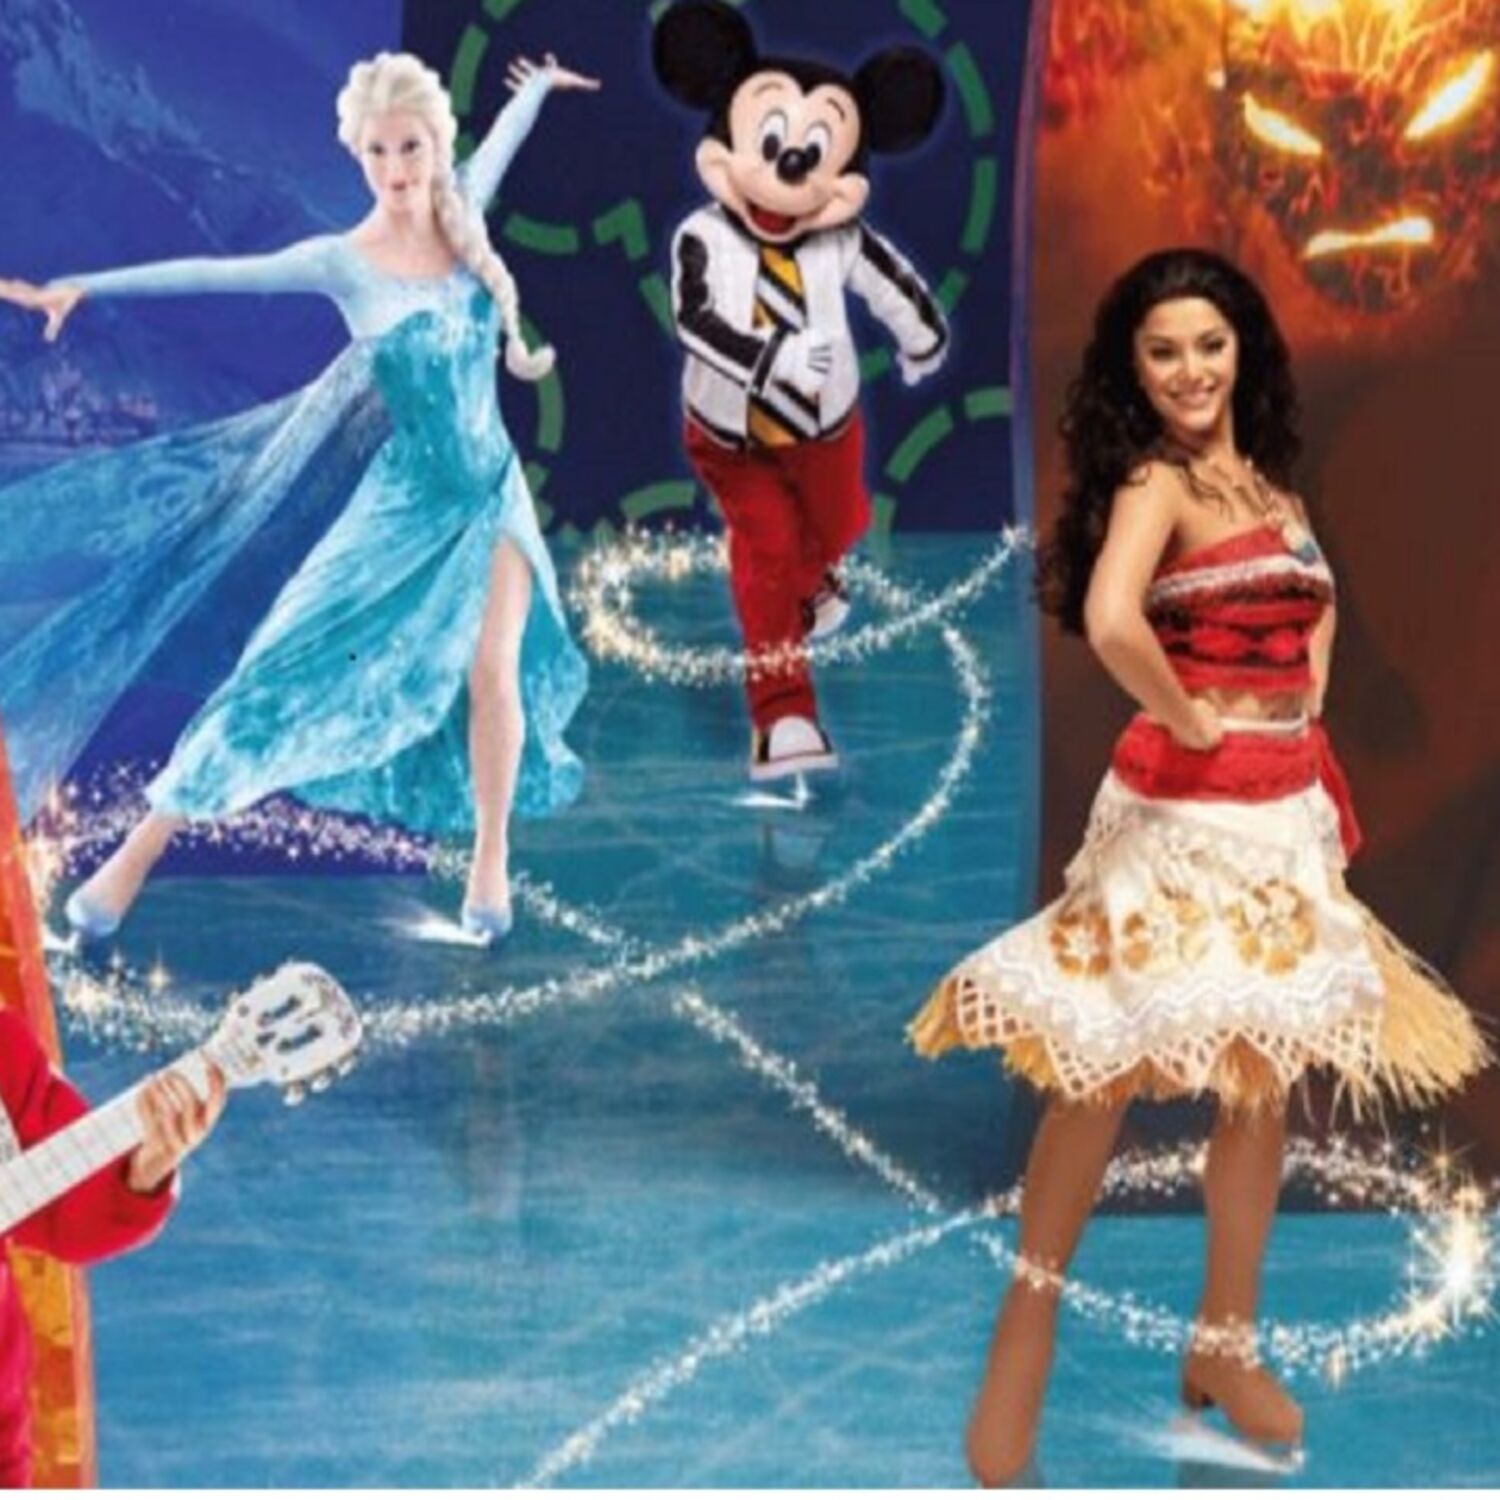 Les personnages de Disney seront fin janvier au Zénith de Dijon